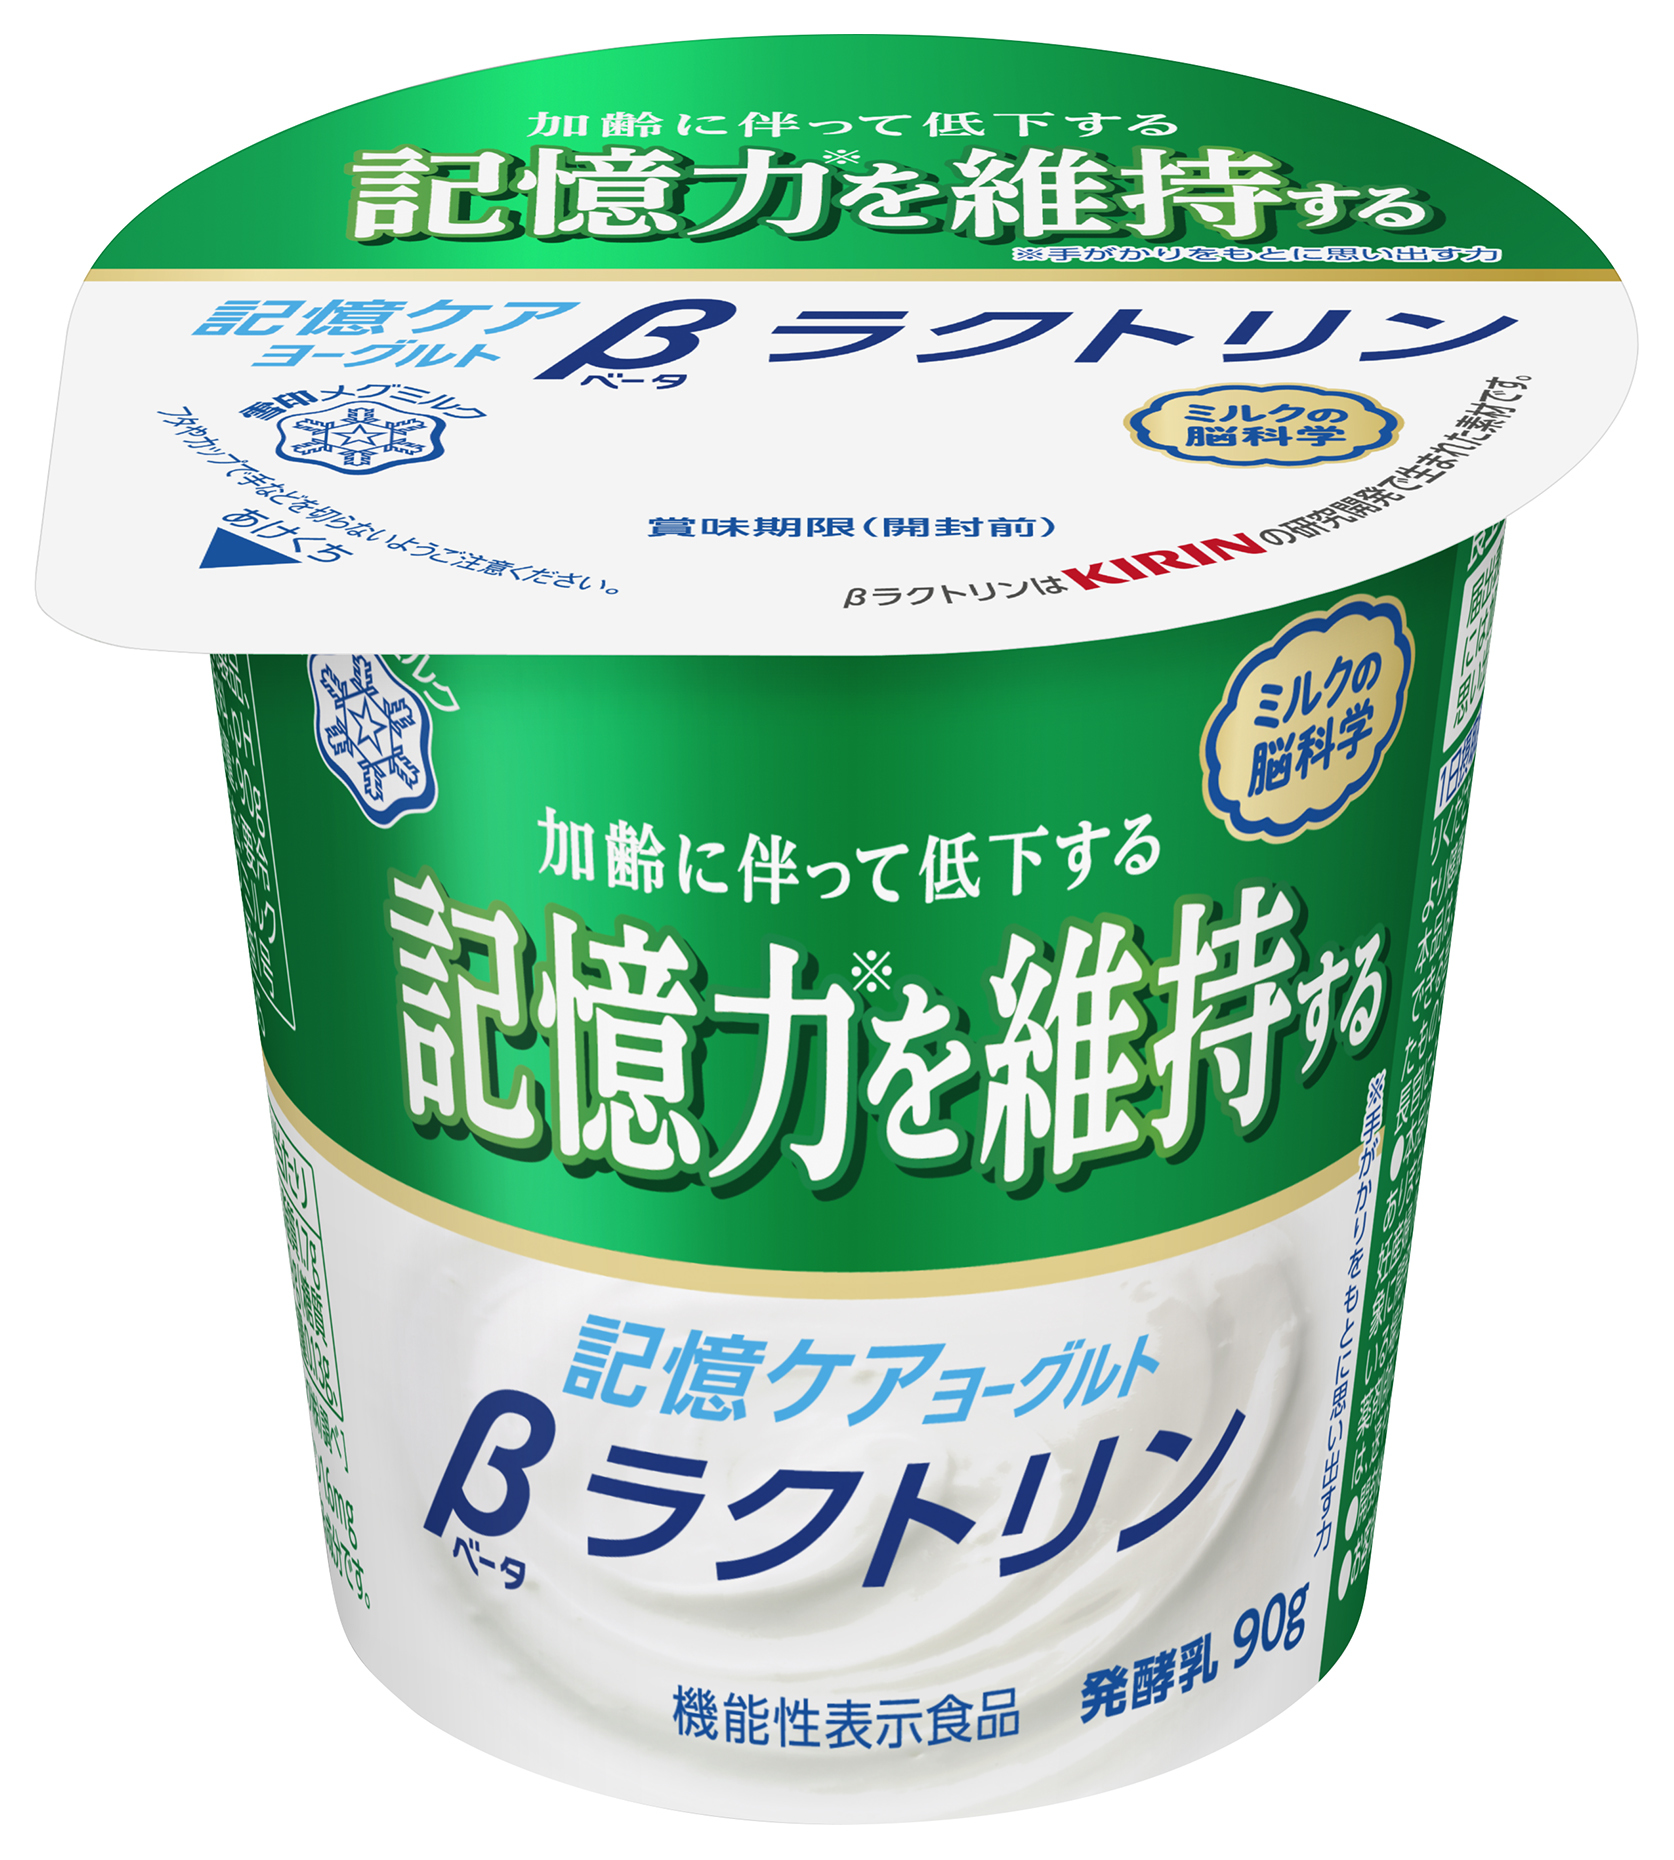 神奈川歯科大学、低脂肪摂取時に
フラクトオリゴ糖の効果が発揮されることを発見